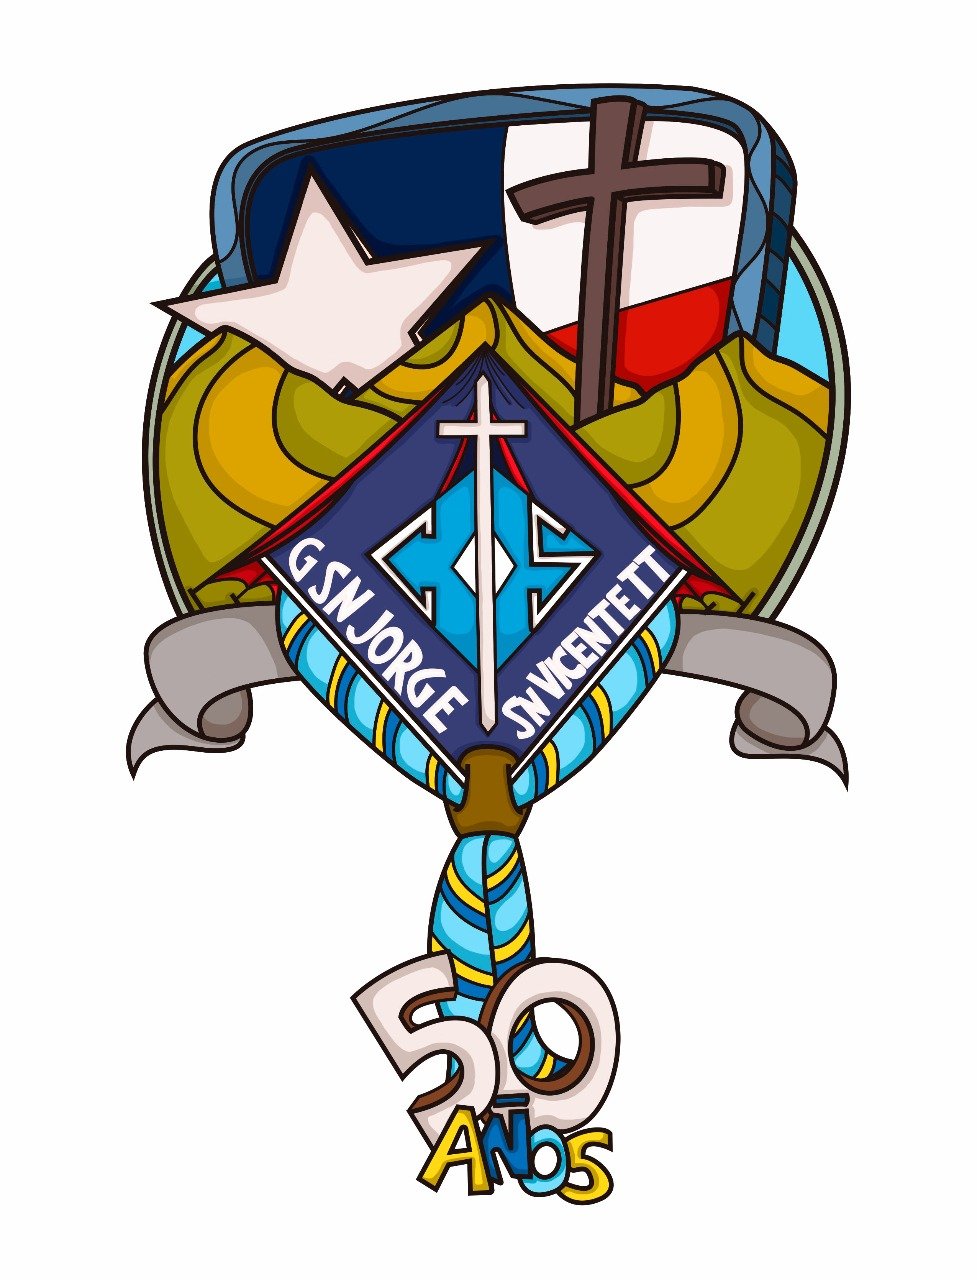 El Grupo Scout San Jorge fue fundado en 1968, por el Padre Cristóforo Colombo entre alumnos del Colegio El Salvador, de los Padres #Barnabitas @agschile